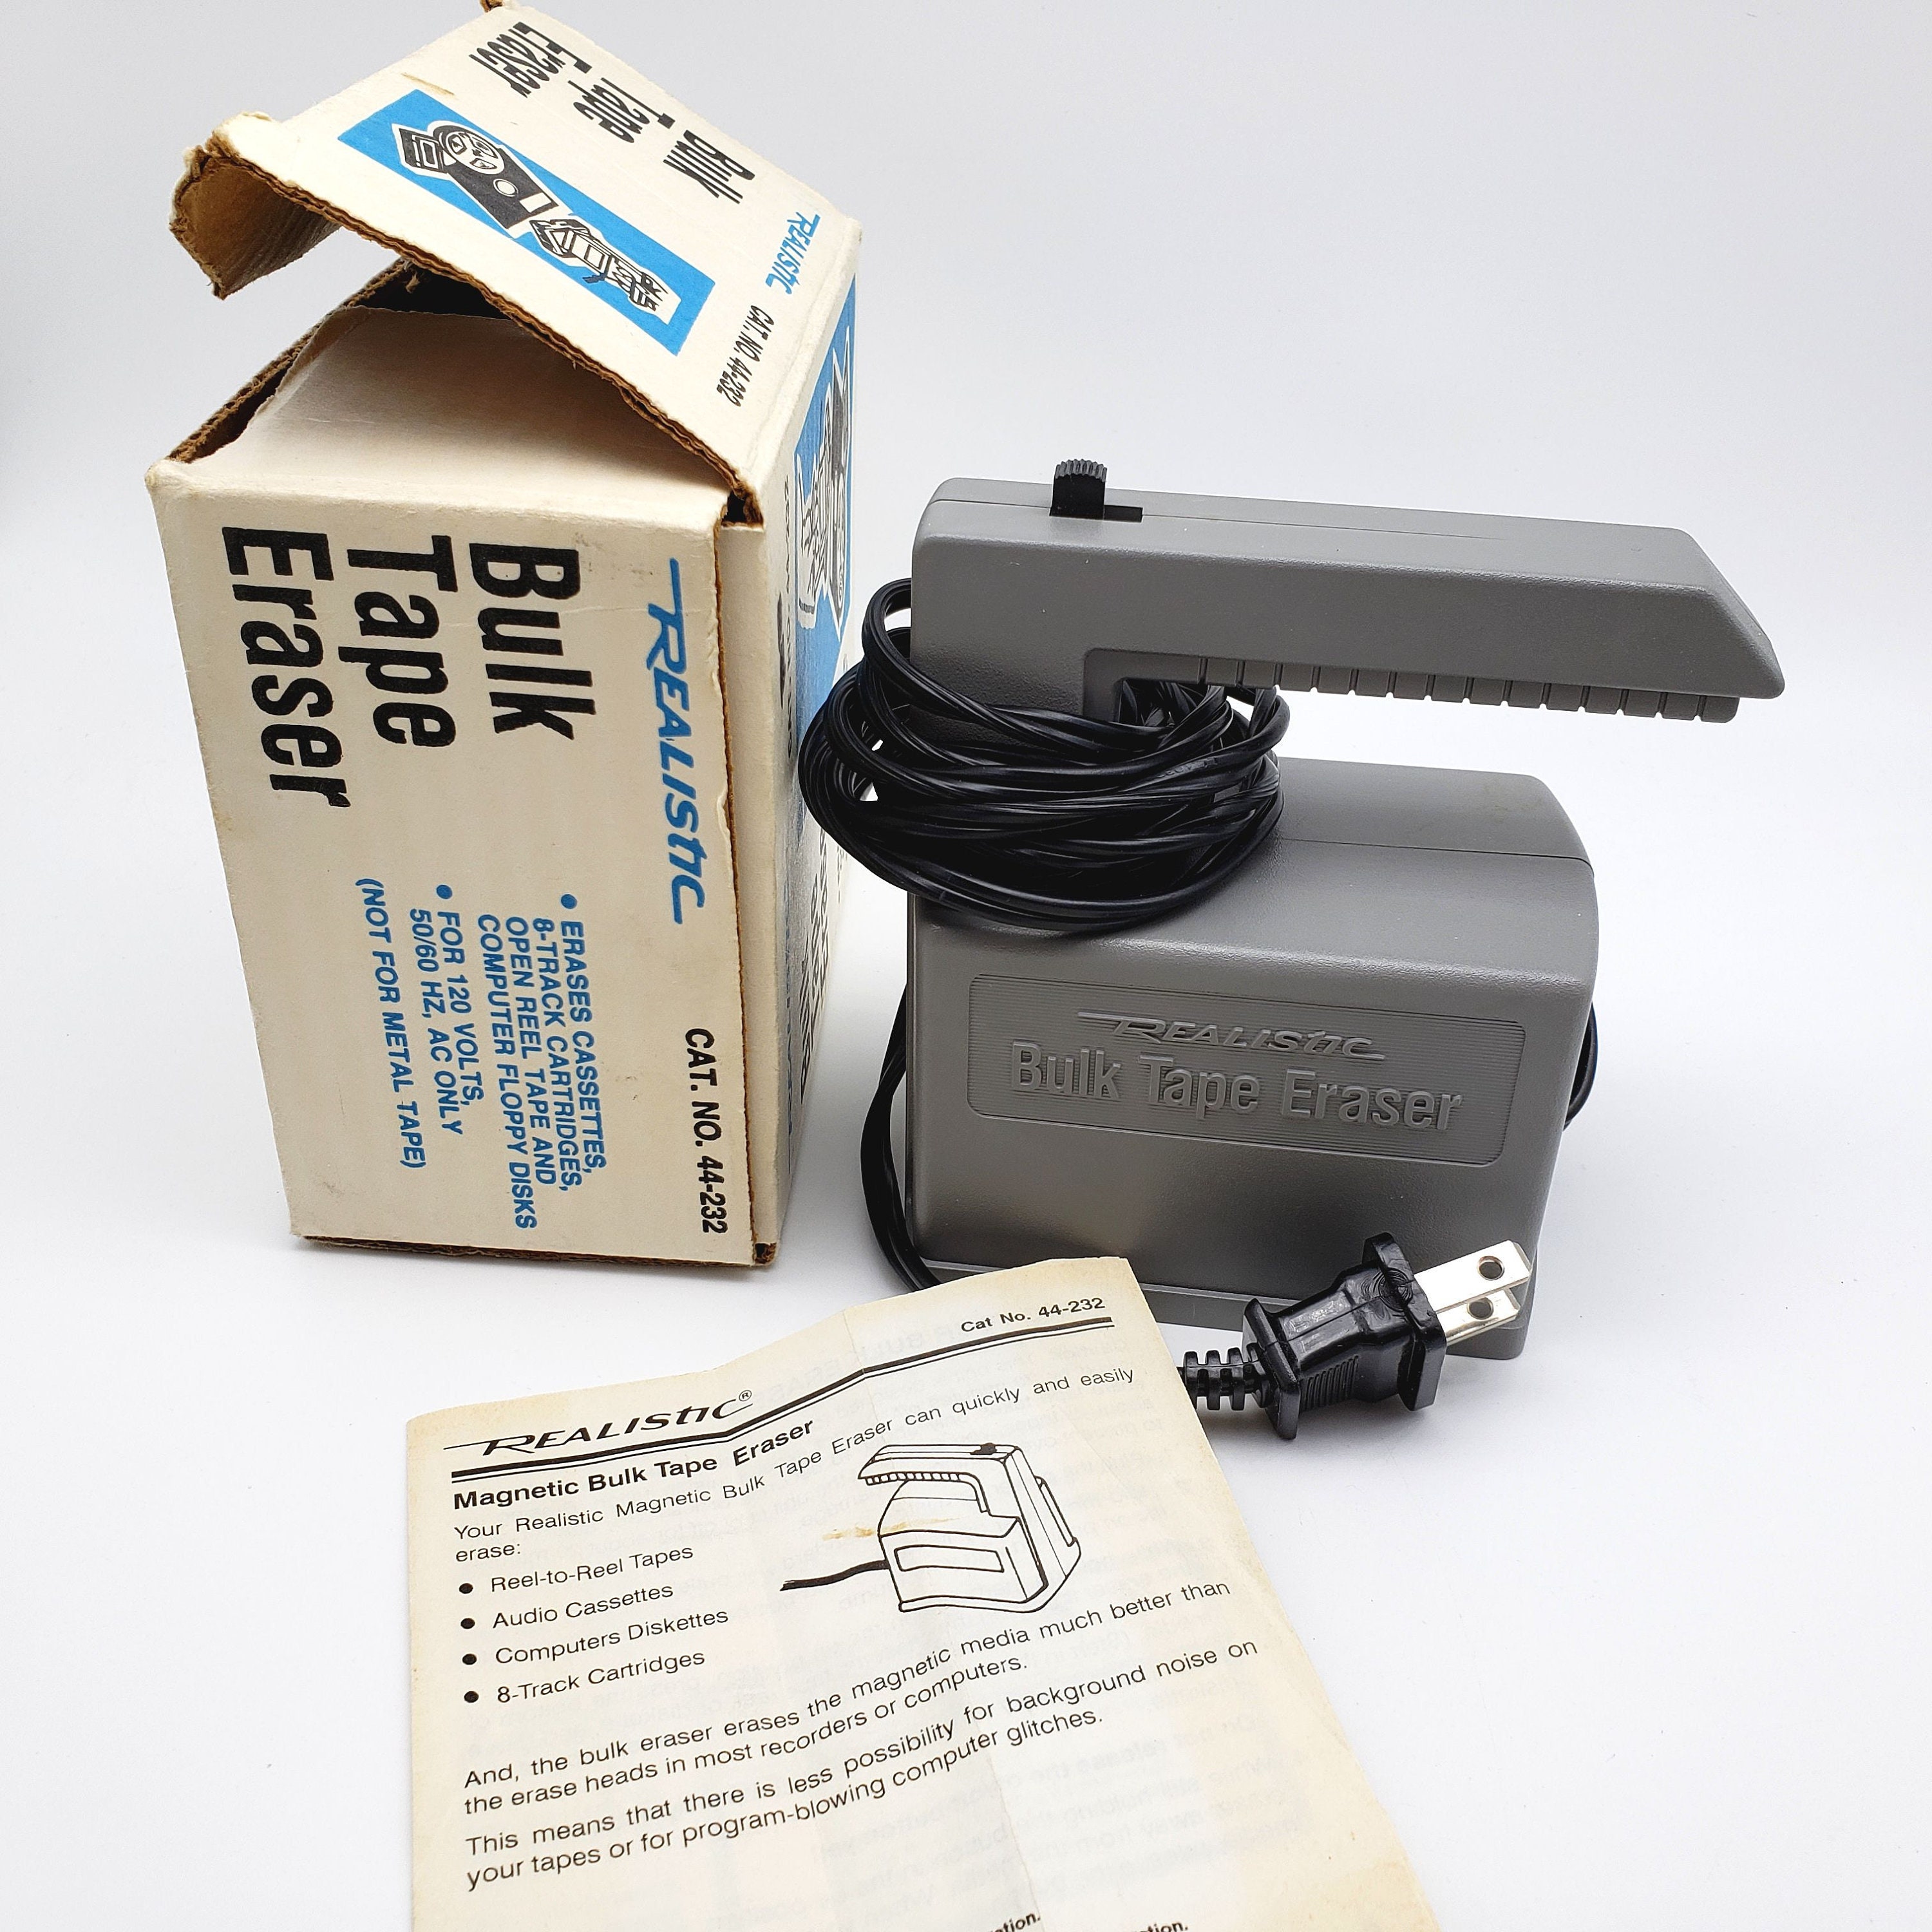 Vintage Realistic Bulk Tape Eraser 44 232 Erases Cassettes Floppy Disks 8  Tracks Open Reel Tapes Magnetic Eraser Old Radio Shack Tandy Corp